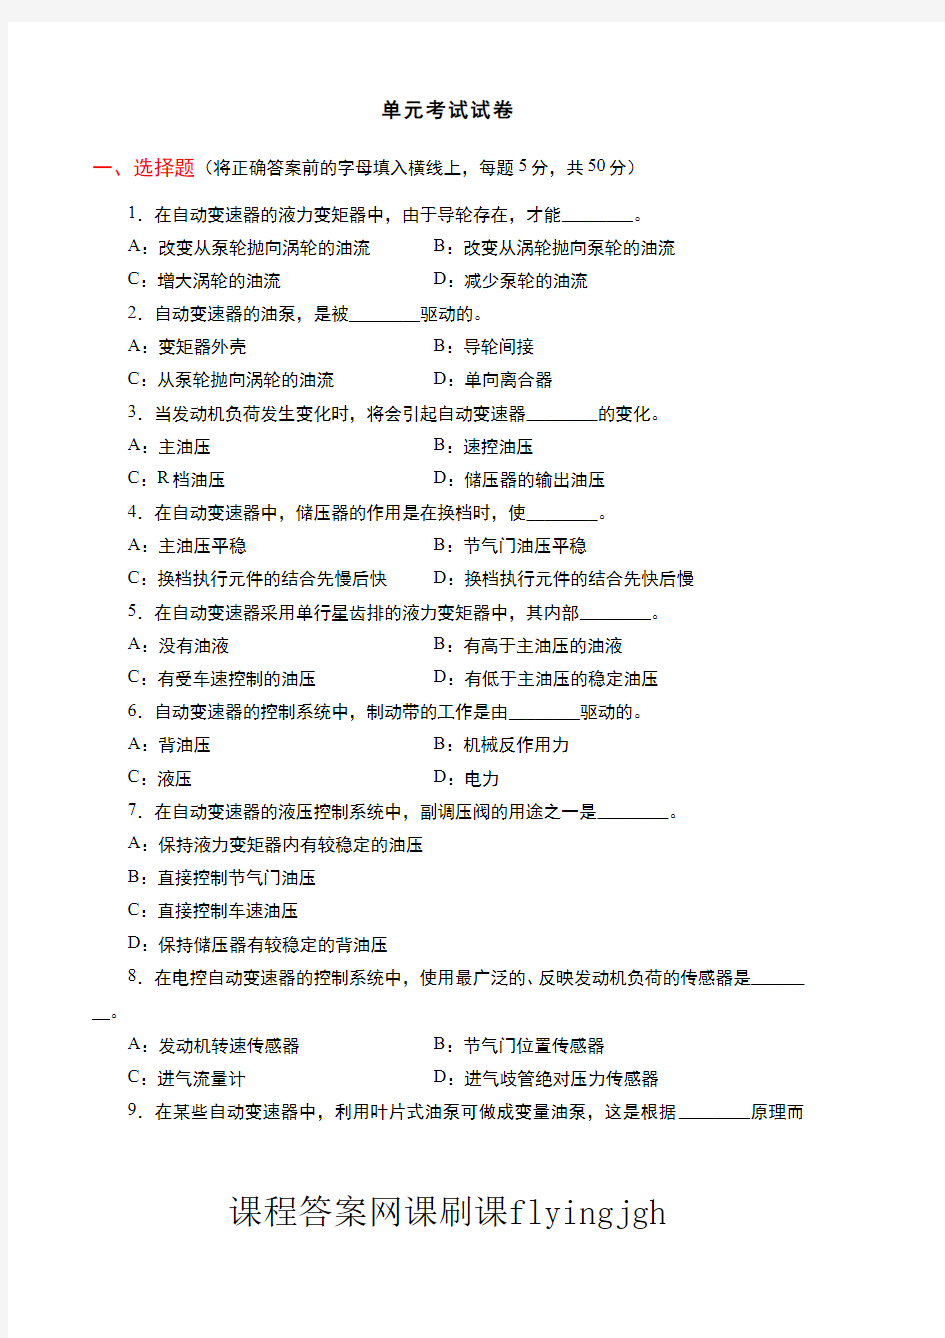 中国大学MOOC慕课爱课程(4)--情境二考试试卷及参考答案网课刷课挂课